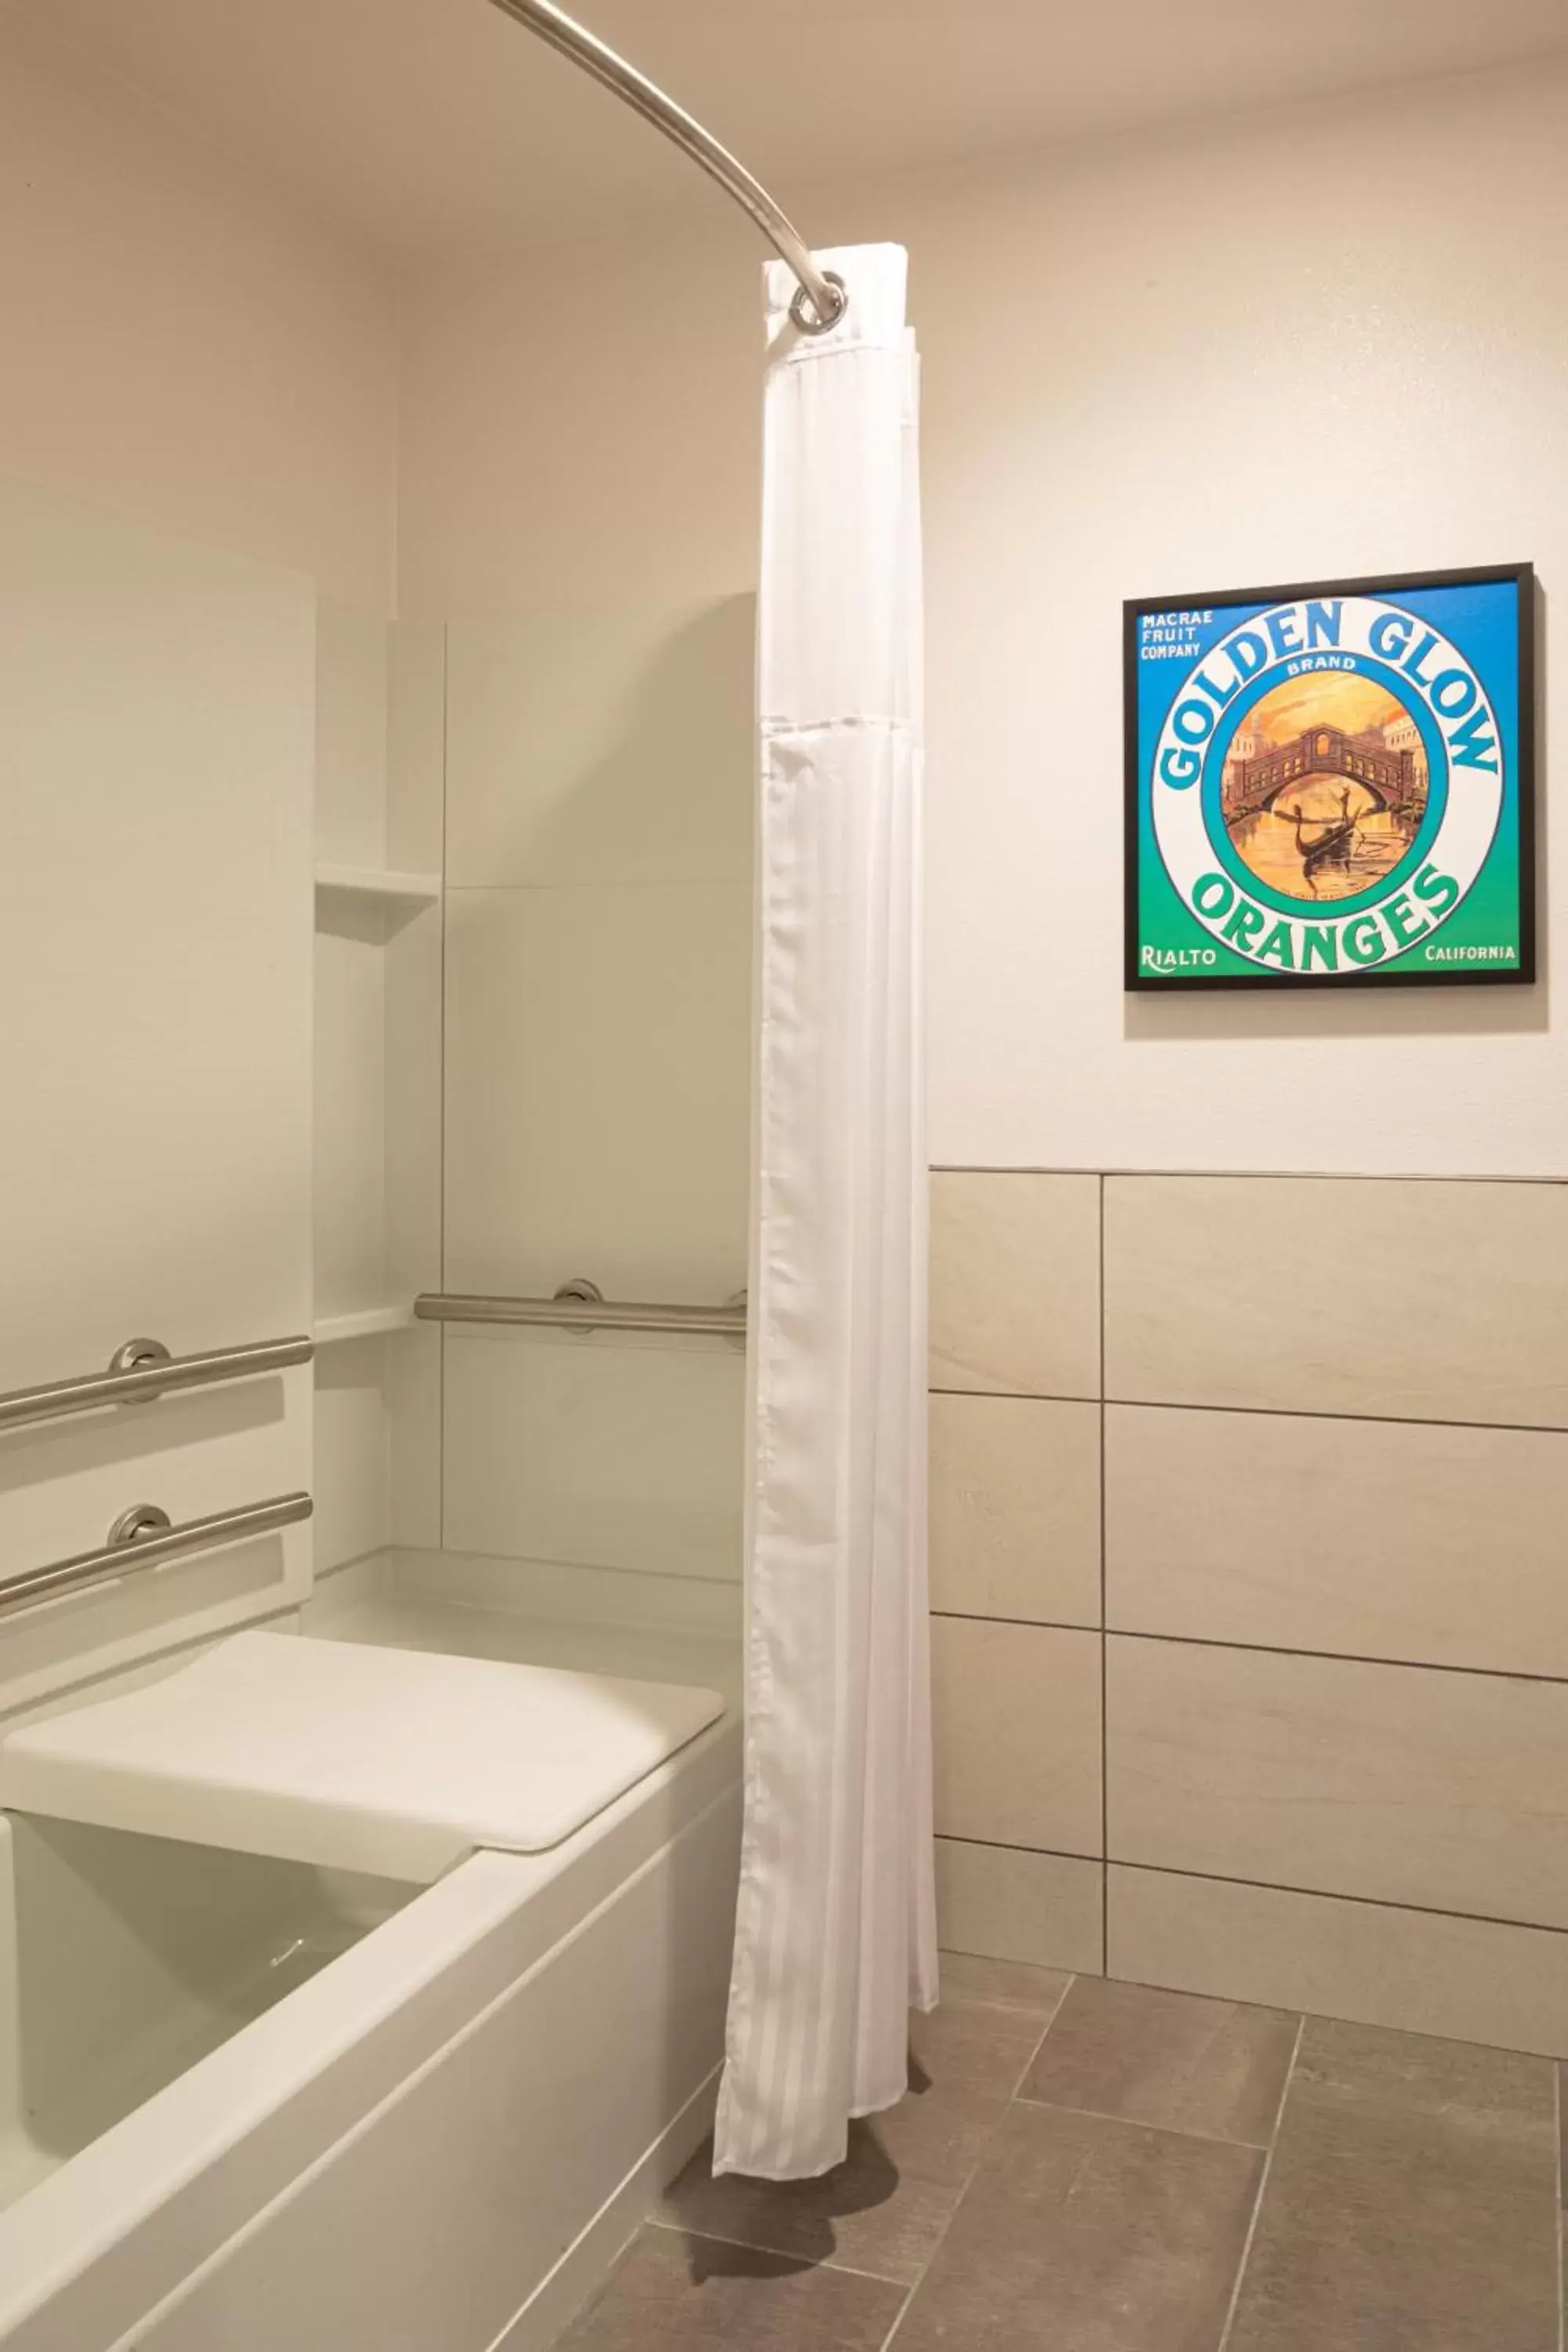 Shower, Bathroom in Ayres Hotel Rialto Fontana